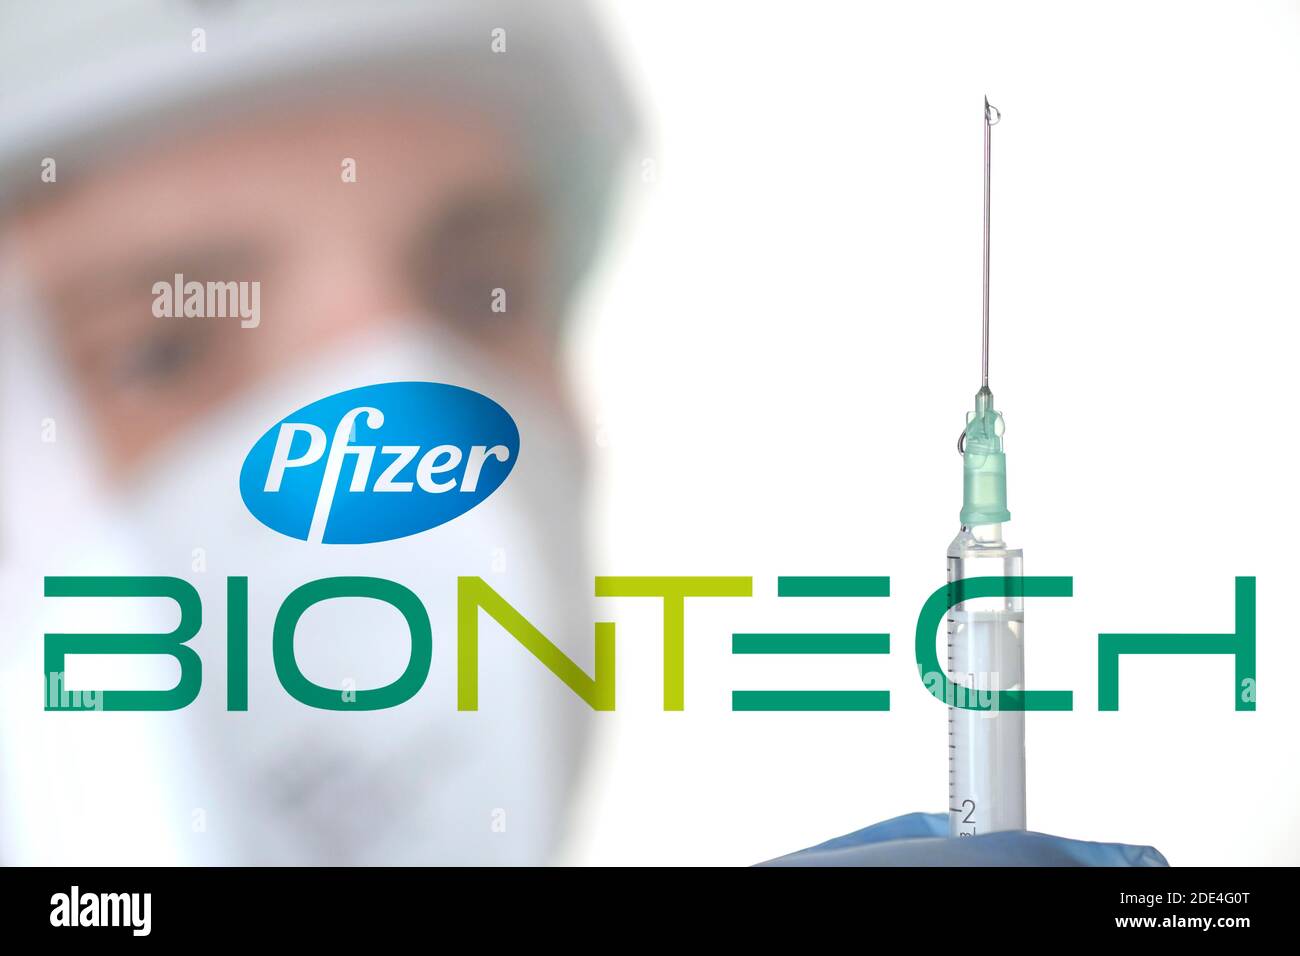 Image symbole vaccin Corona de BIONTECH, PFIZER, homme avec seringue, crise corona, Bade-Wurtemberg, Allemagne Banque D'Images